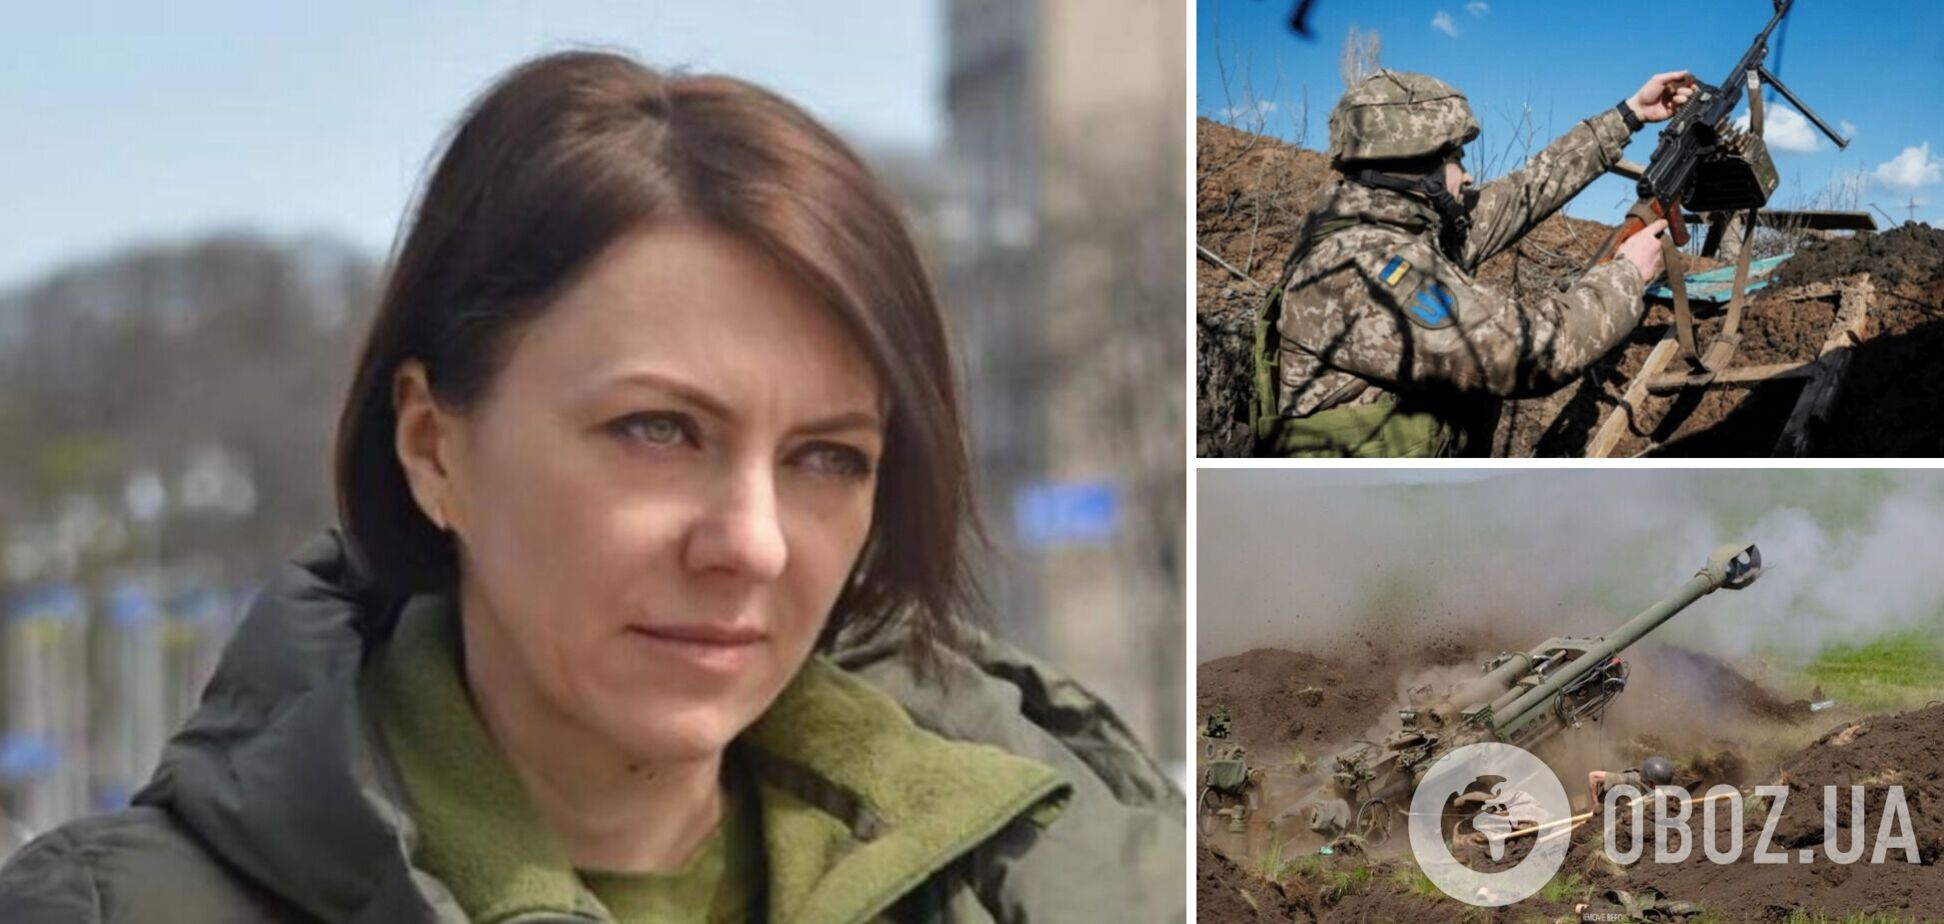 Ганна Маляр висловилася про військову допомогу Україні